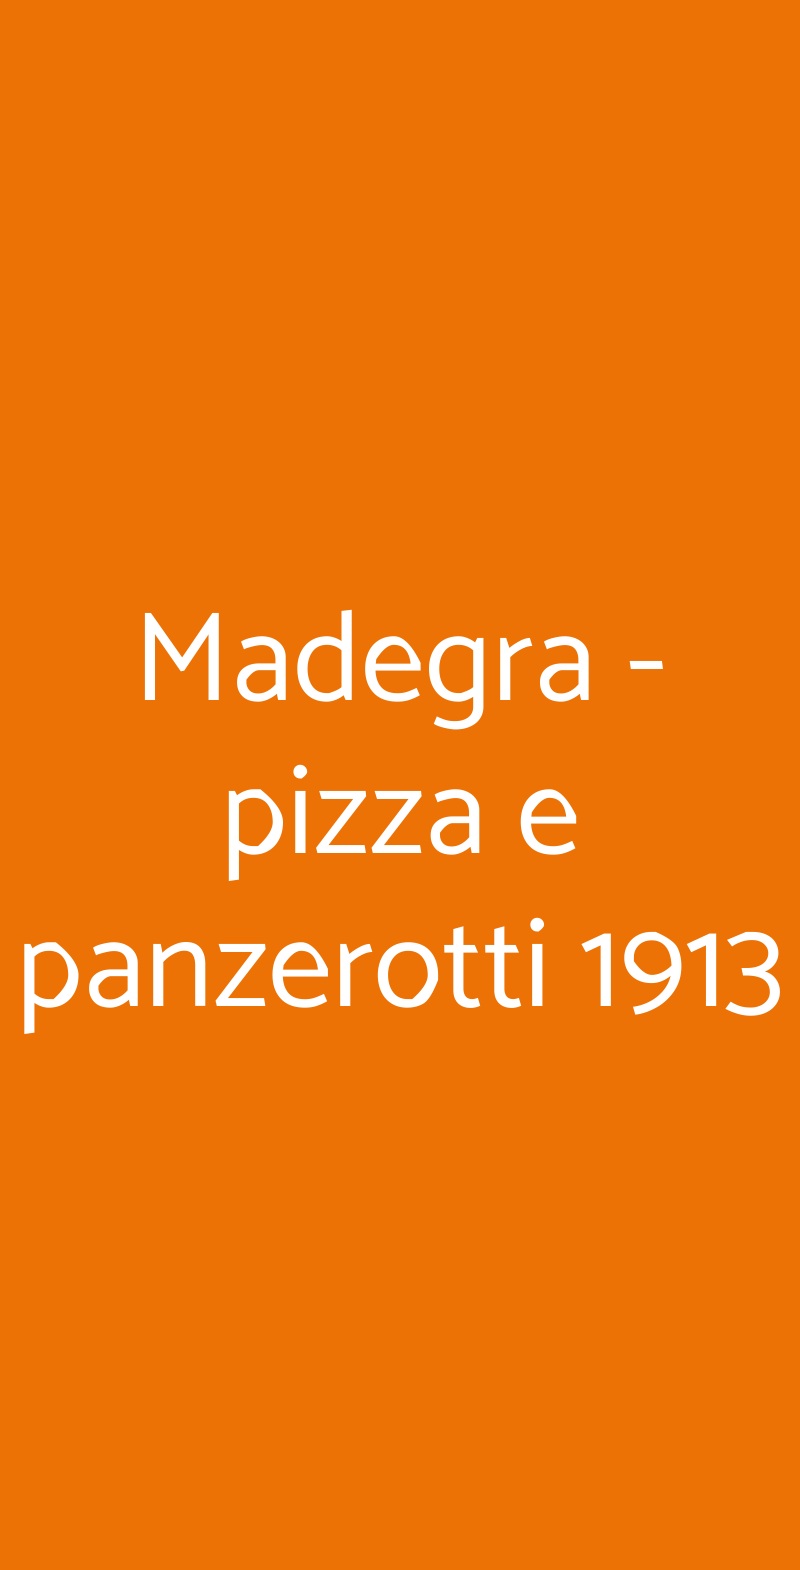 Madegra - pizza e panzerotti 1913 Milano menù 1 pagina